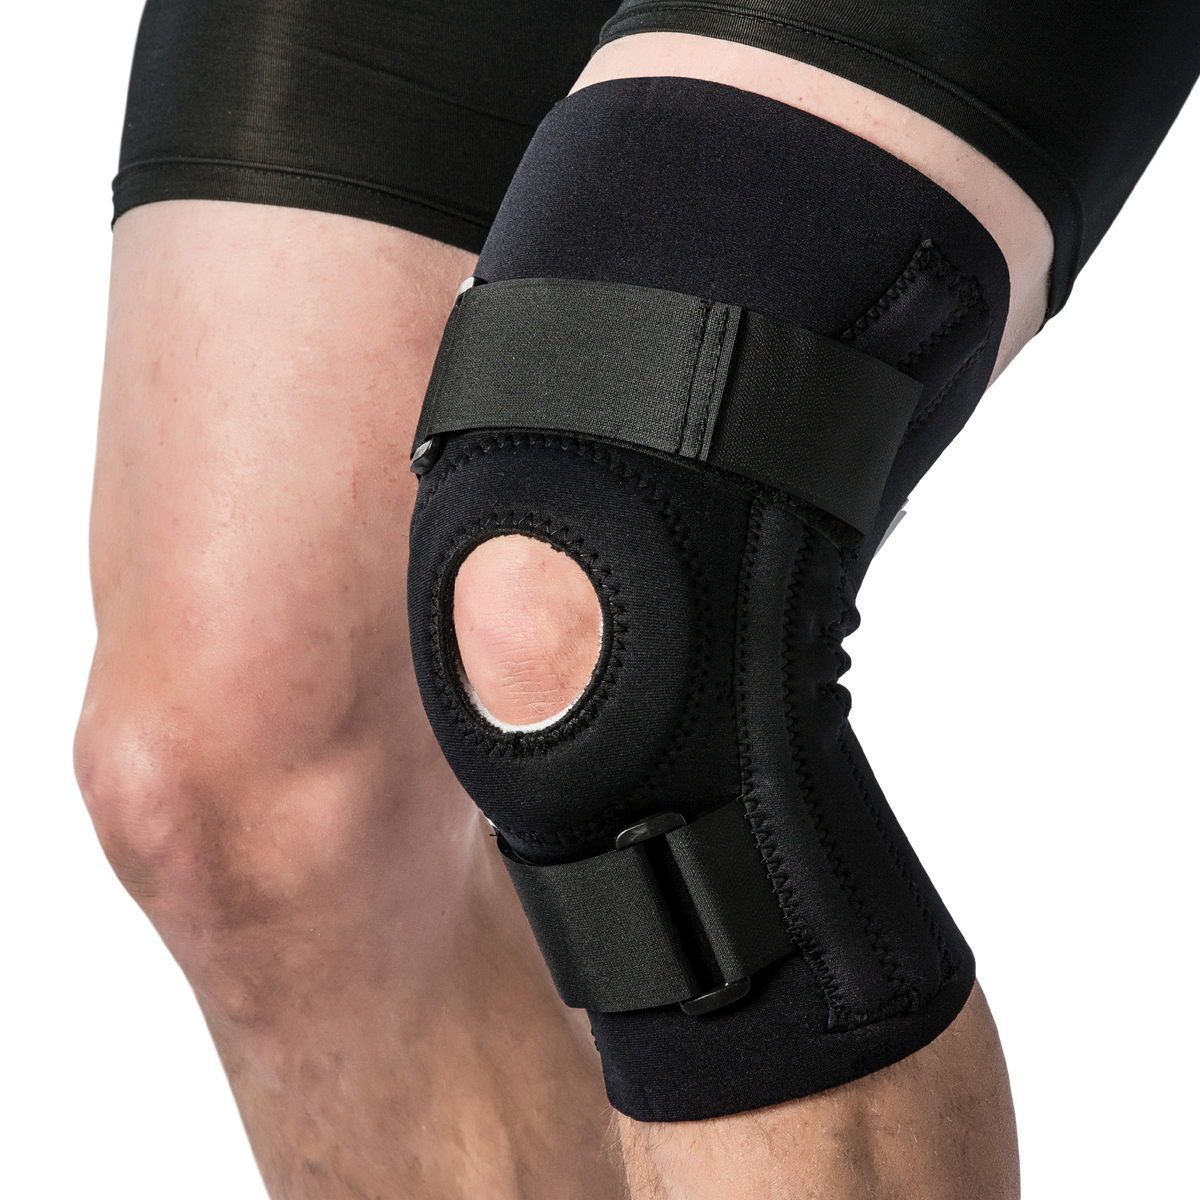 Extreme Neoprene Knee Brace – Nevin Sports Medicine